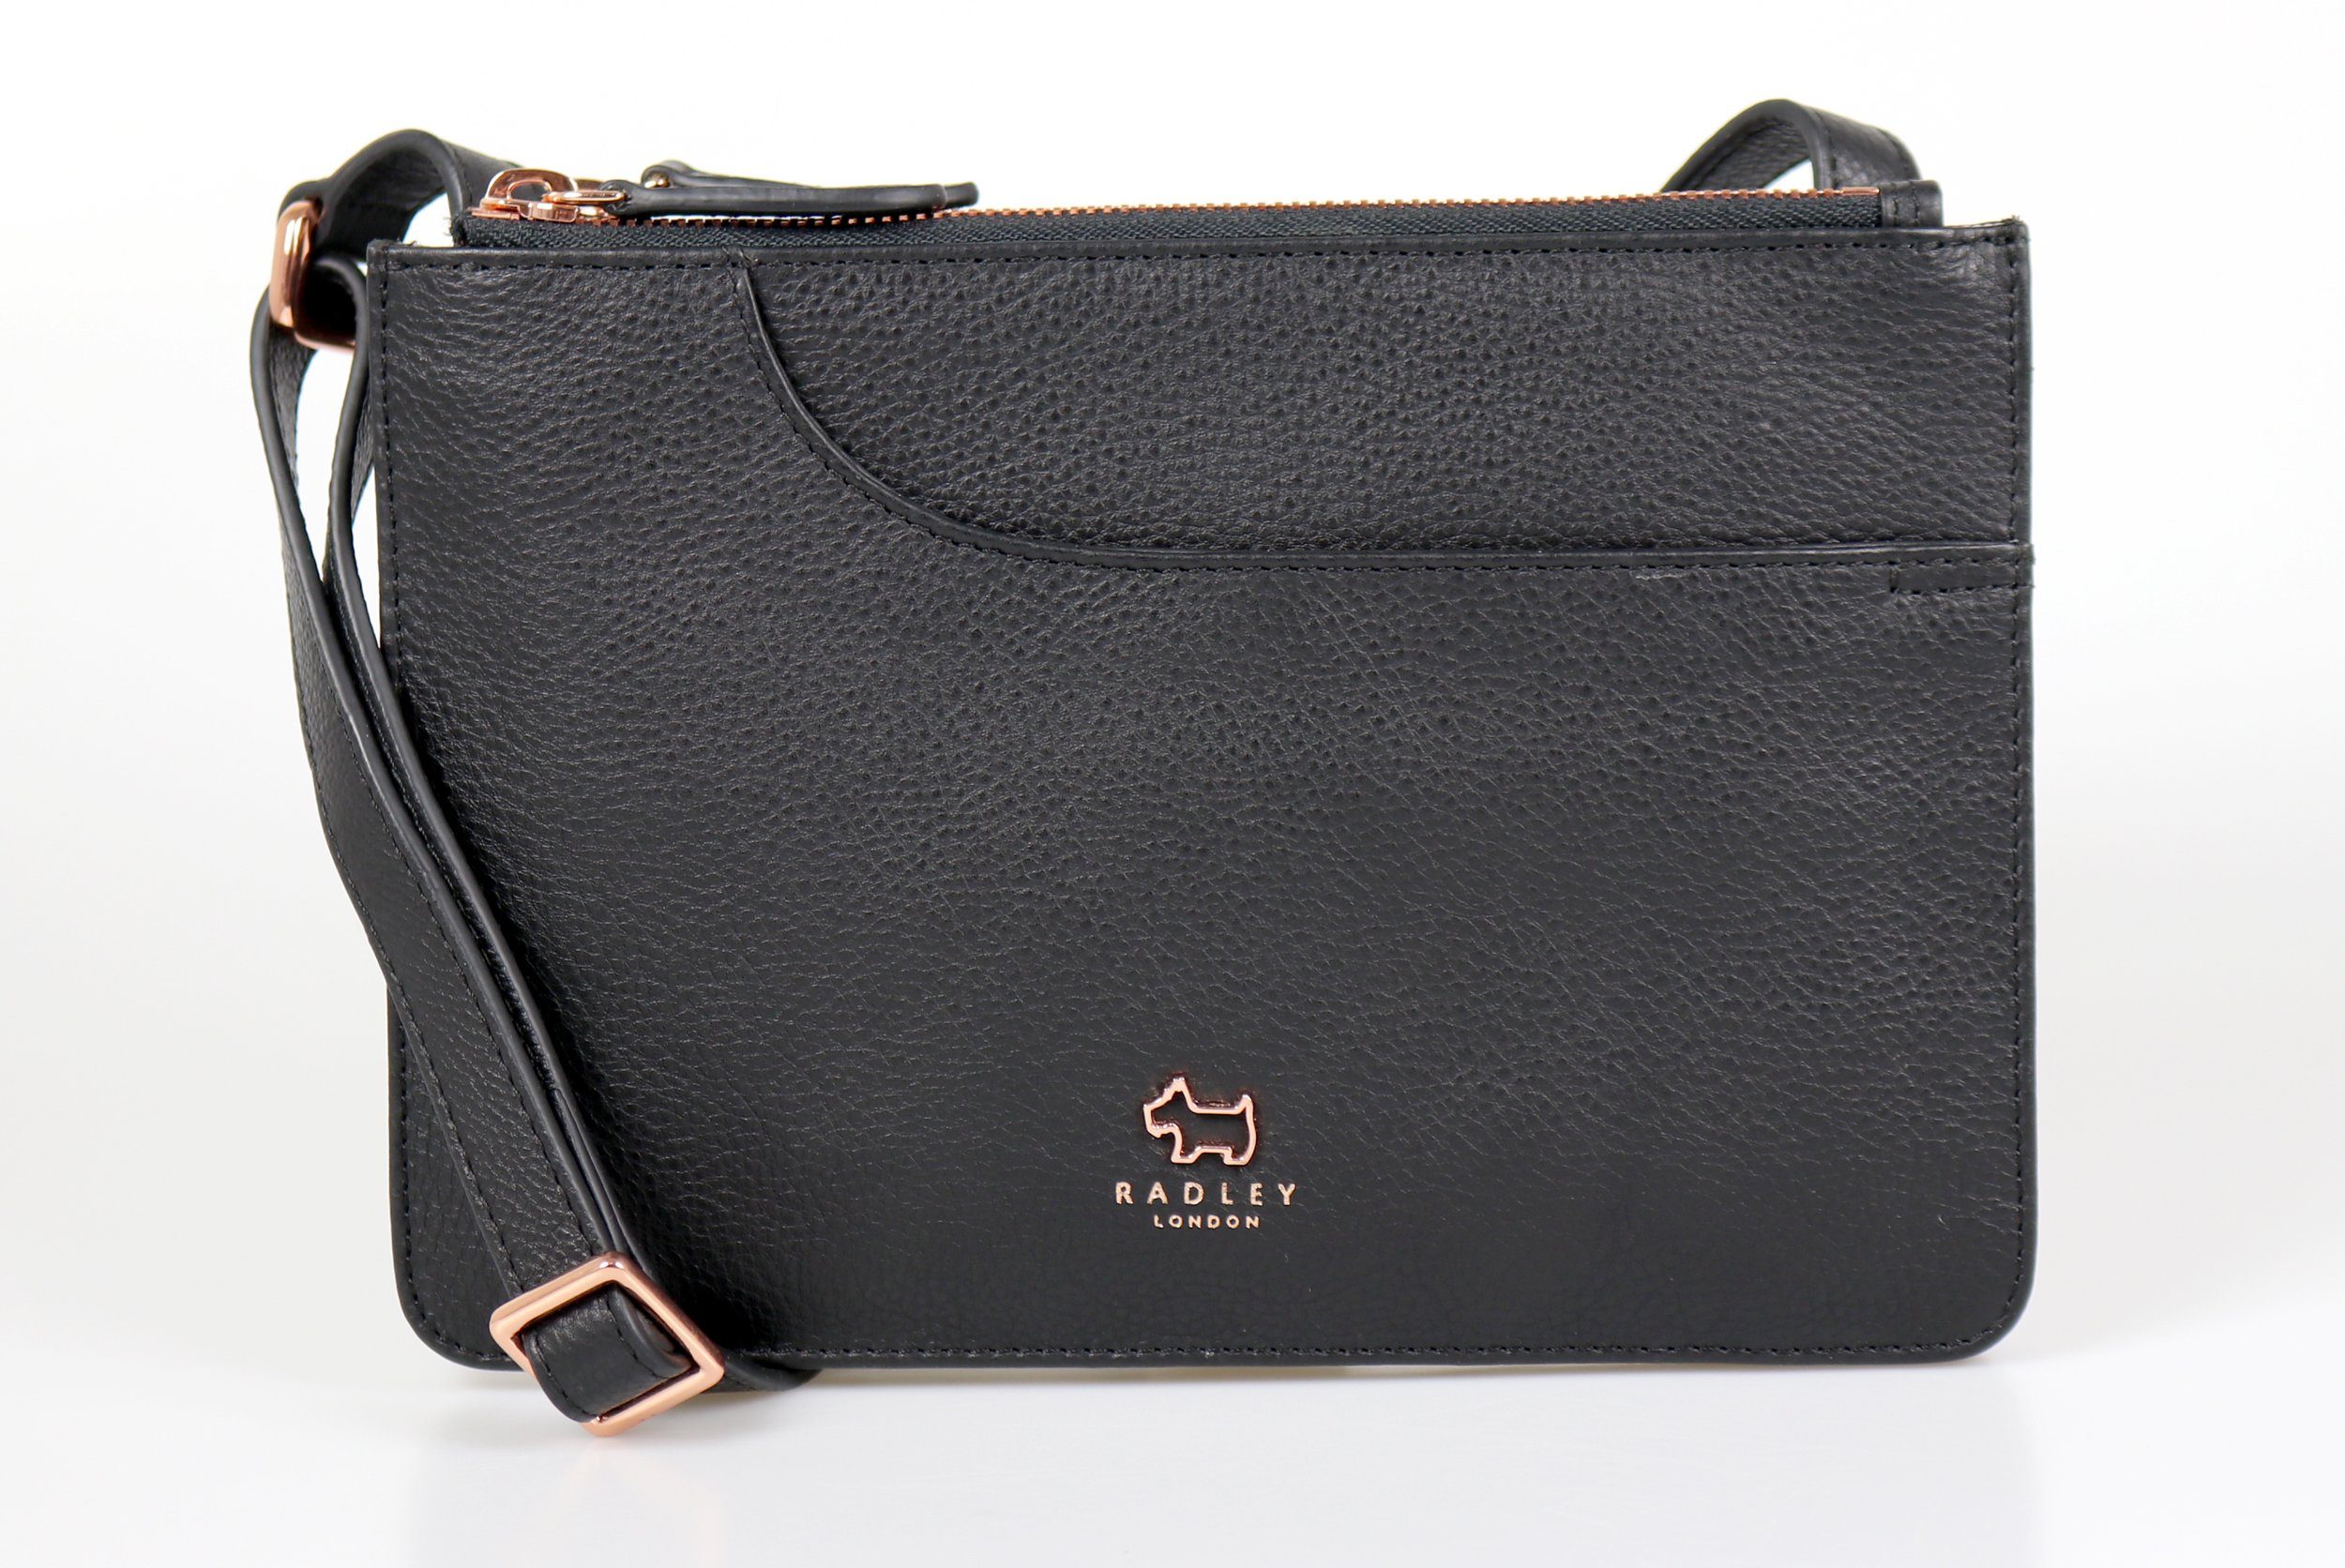 Radley Schultertasche »Damen Tasche Crossover "Pocket" 17069 black, Leder  schwarz, klein, Metalldetails rosegold« online kaufen | OTTO